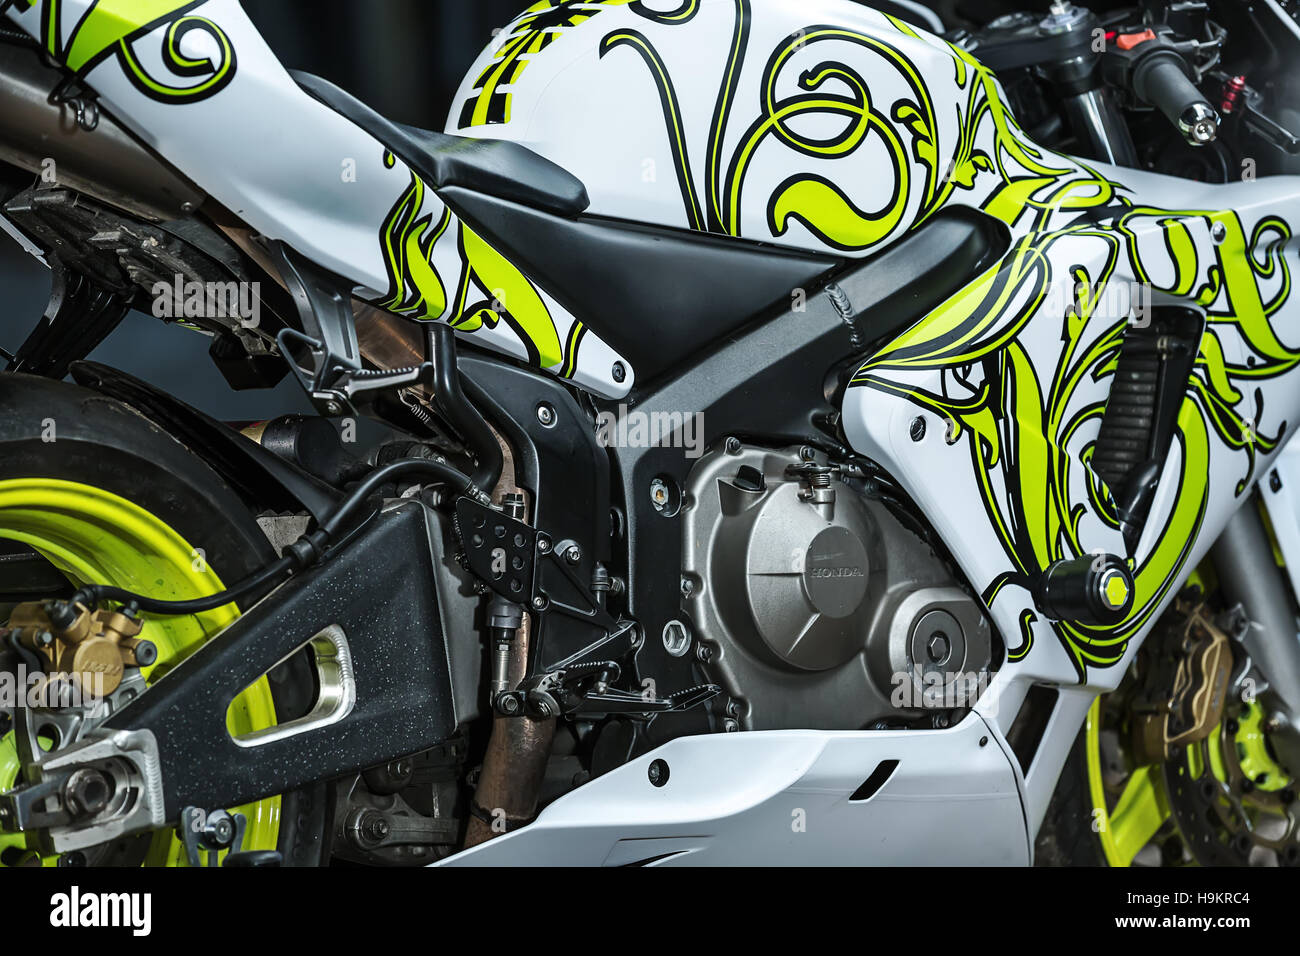 Honda Sport Motorrad tuning Stockfotografie - Alamy